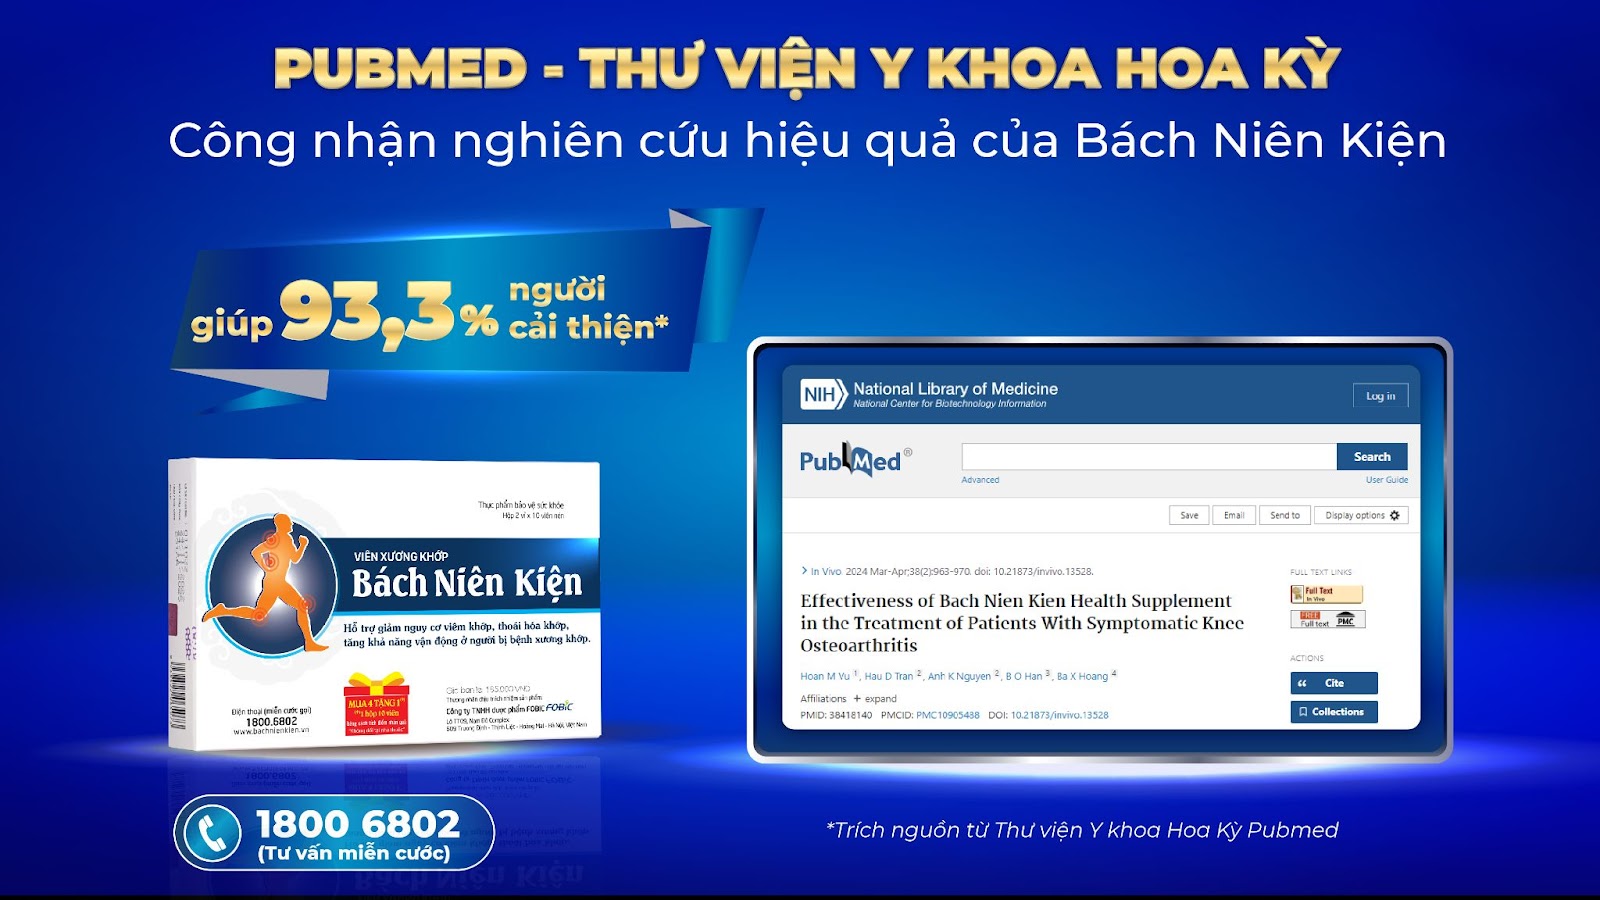 Truyền hình HTV đưa tin Bách Niên Kiện của Việt Nam được Hoa Kỳ công nhận hiệu quả - 1